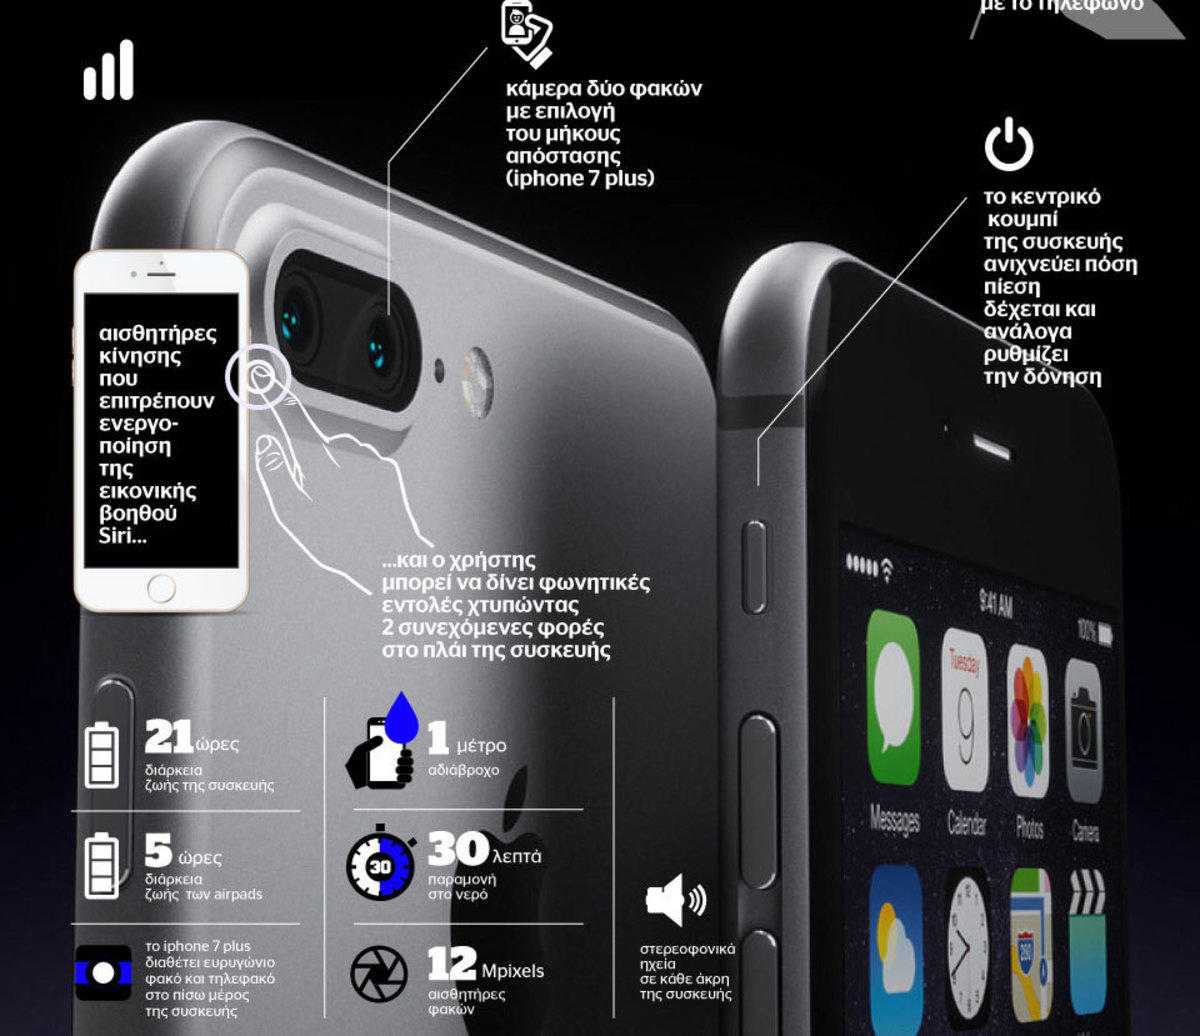 Το iPhone 7 είναι εδώ (και σε infographic)!